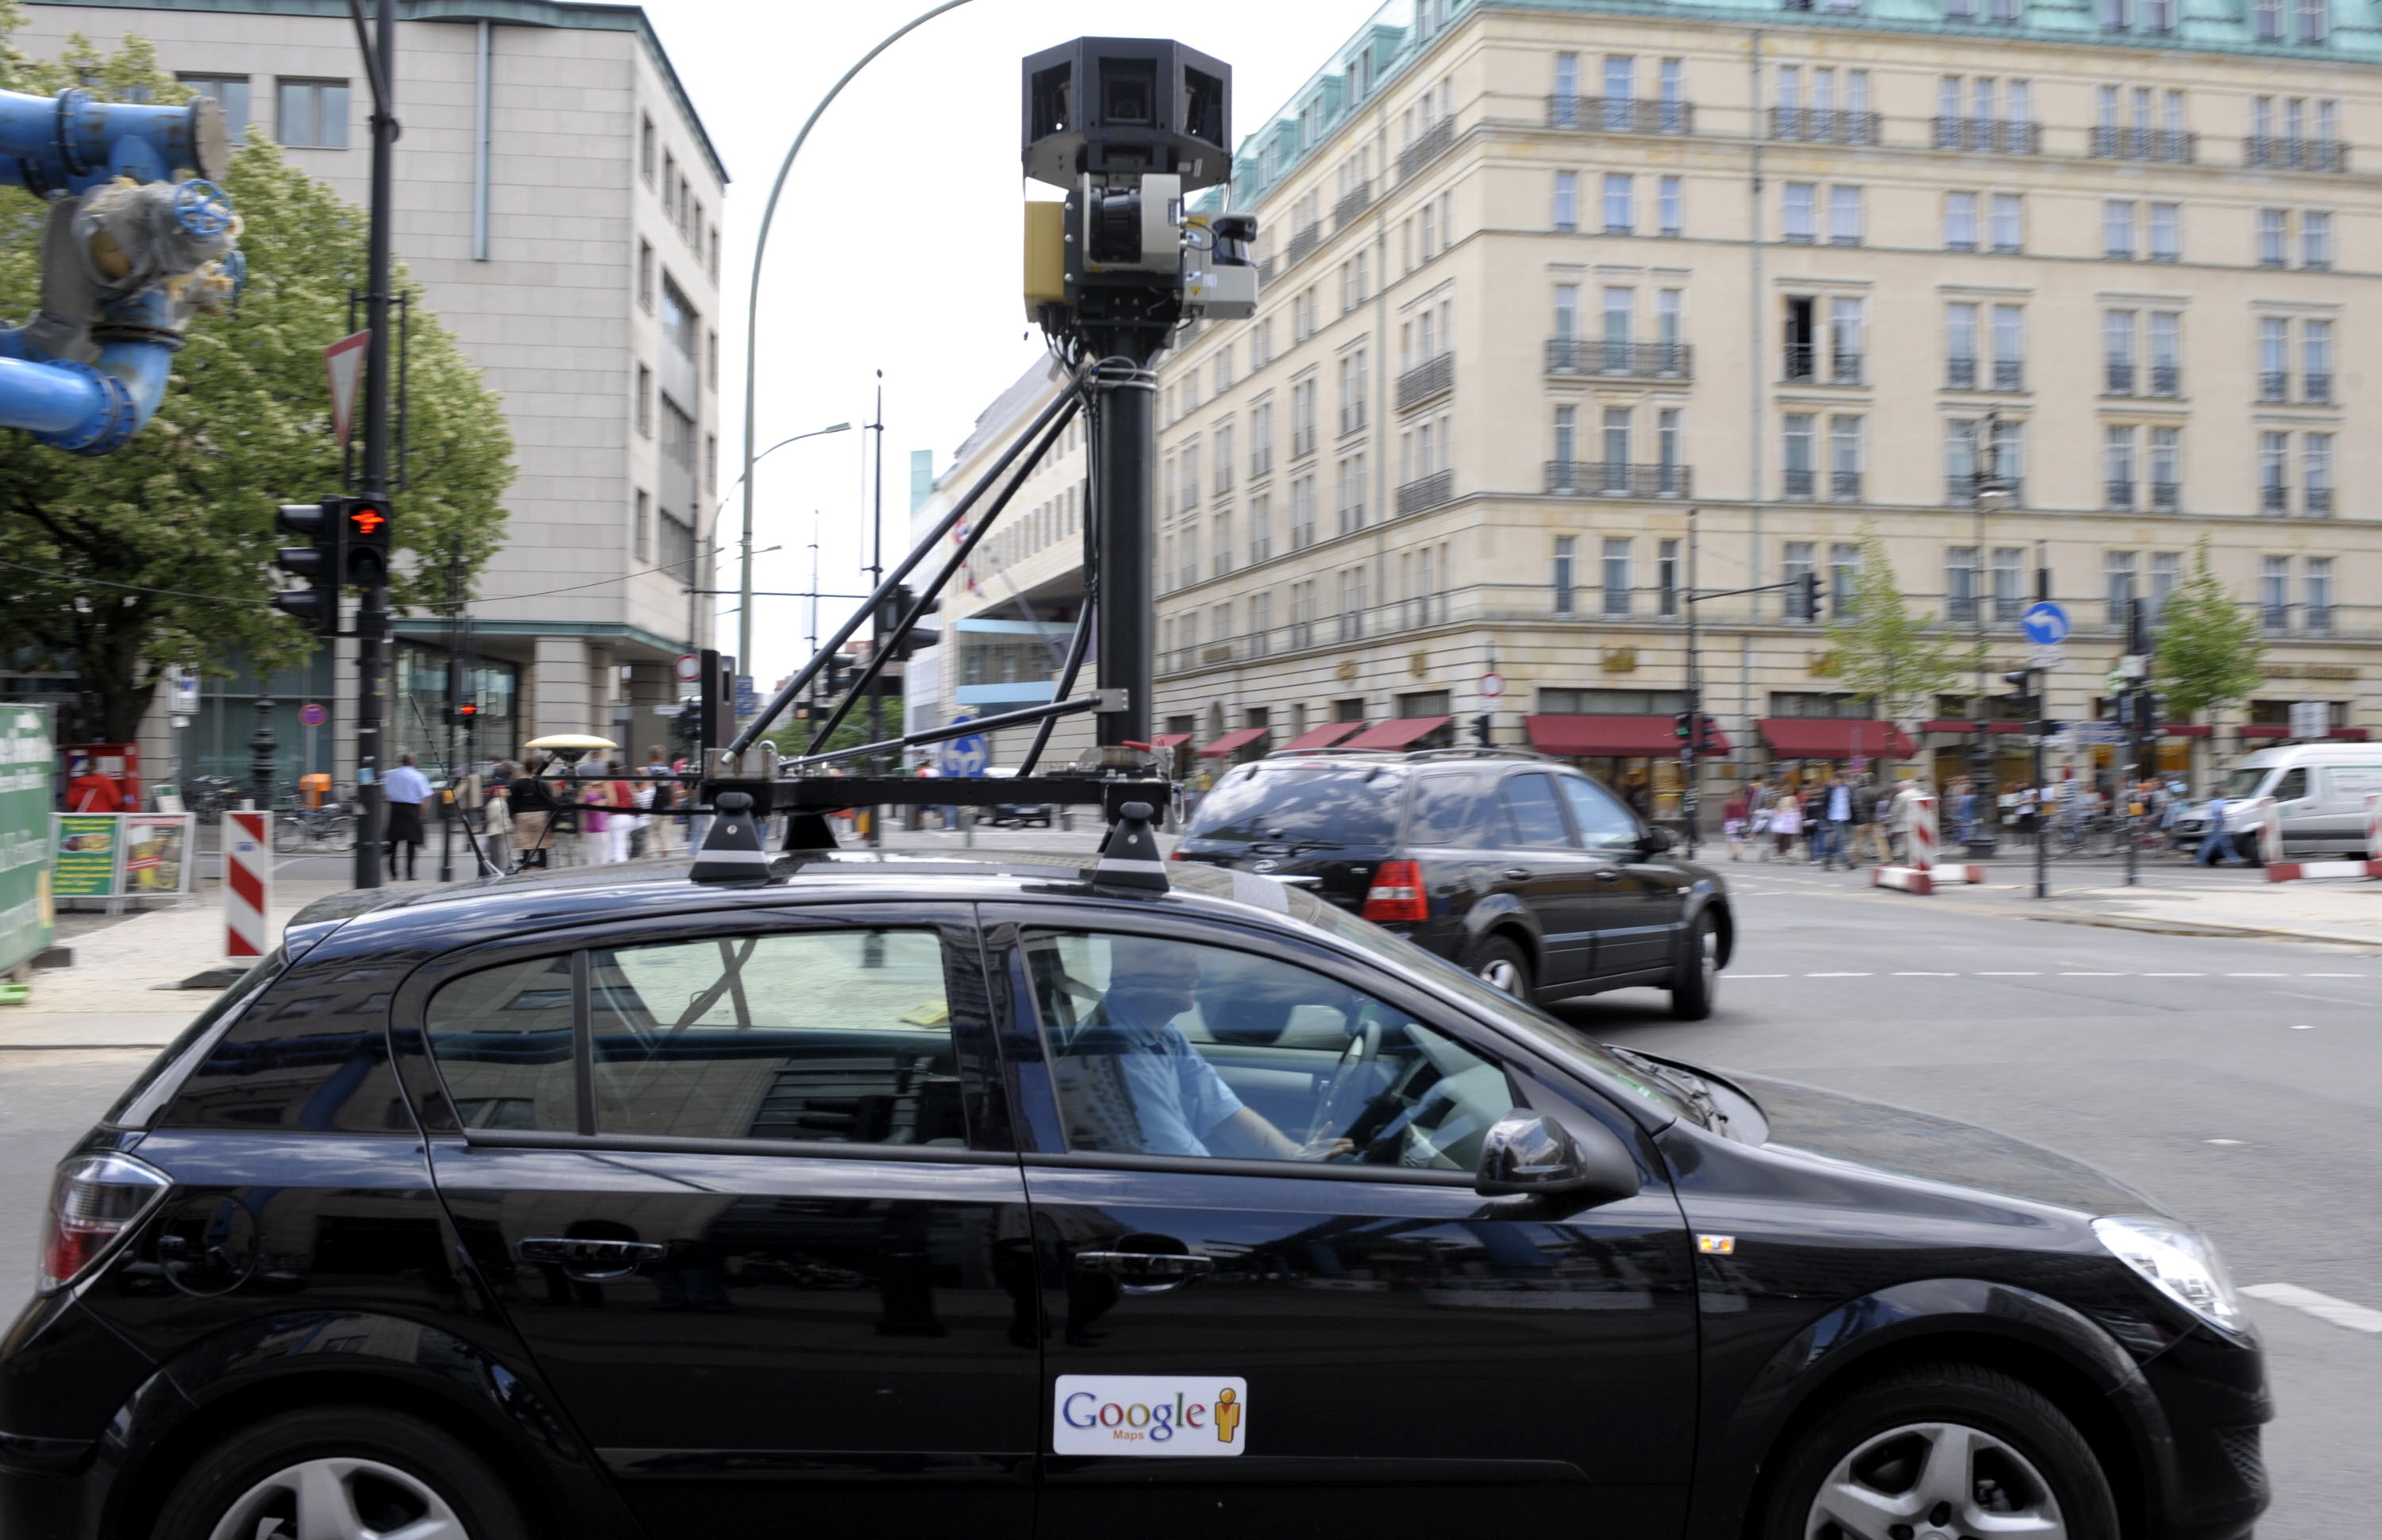 Βροχή τα ευτράπελα, αλλά και οι μηνύσεις κατά της Google Street View